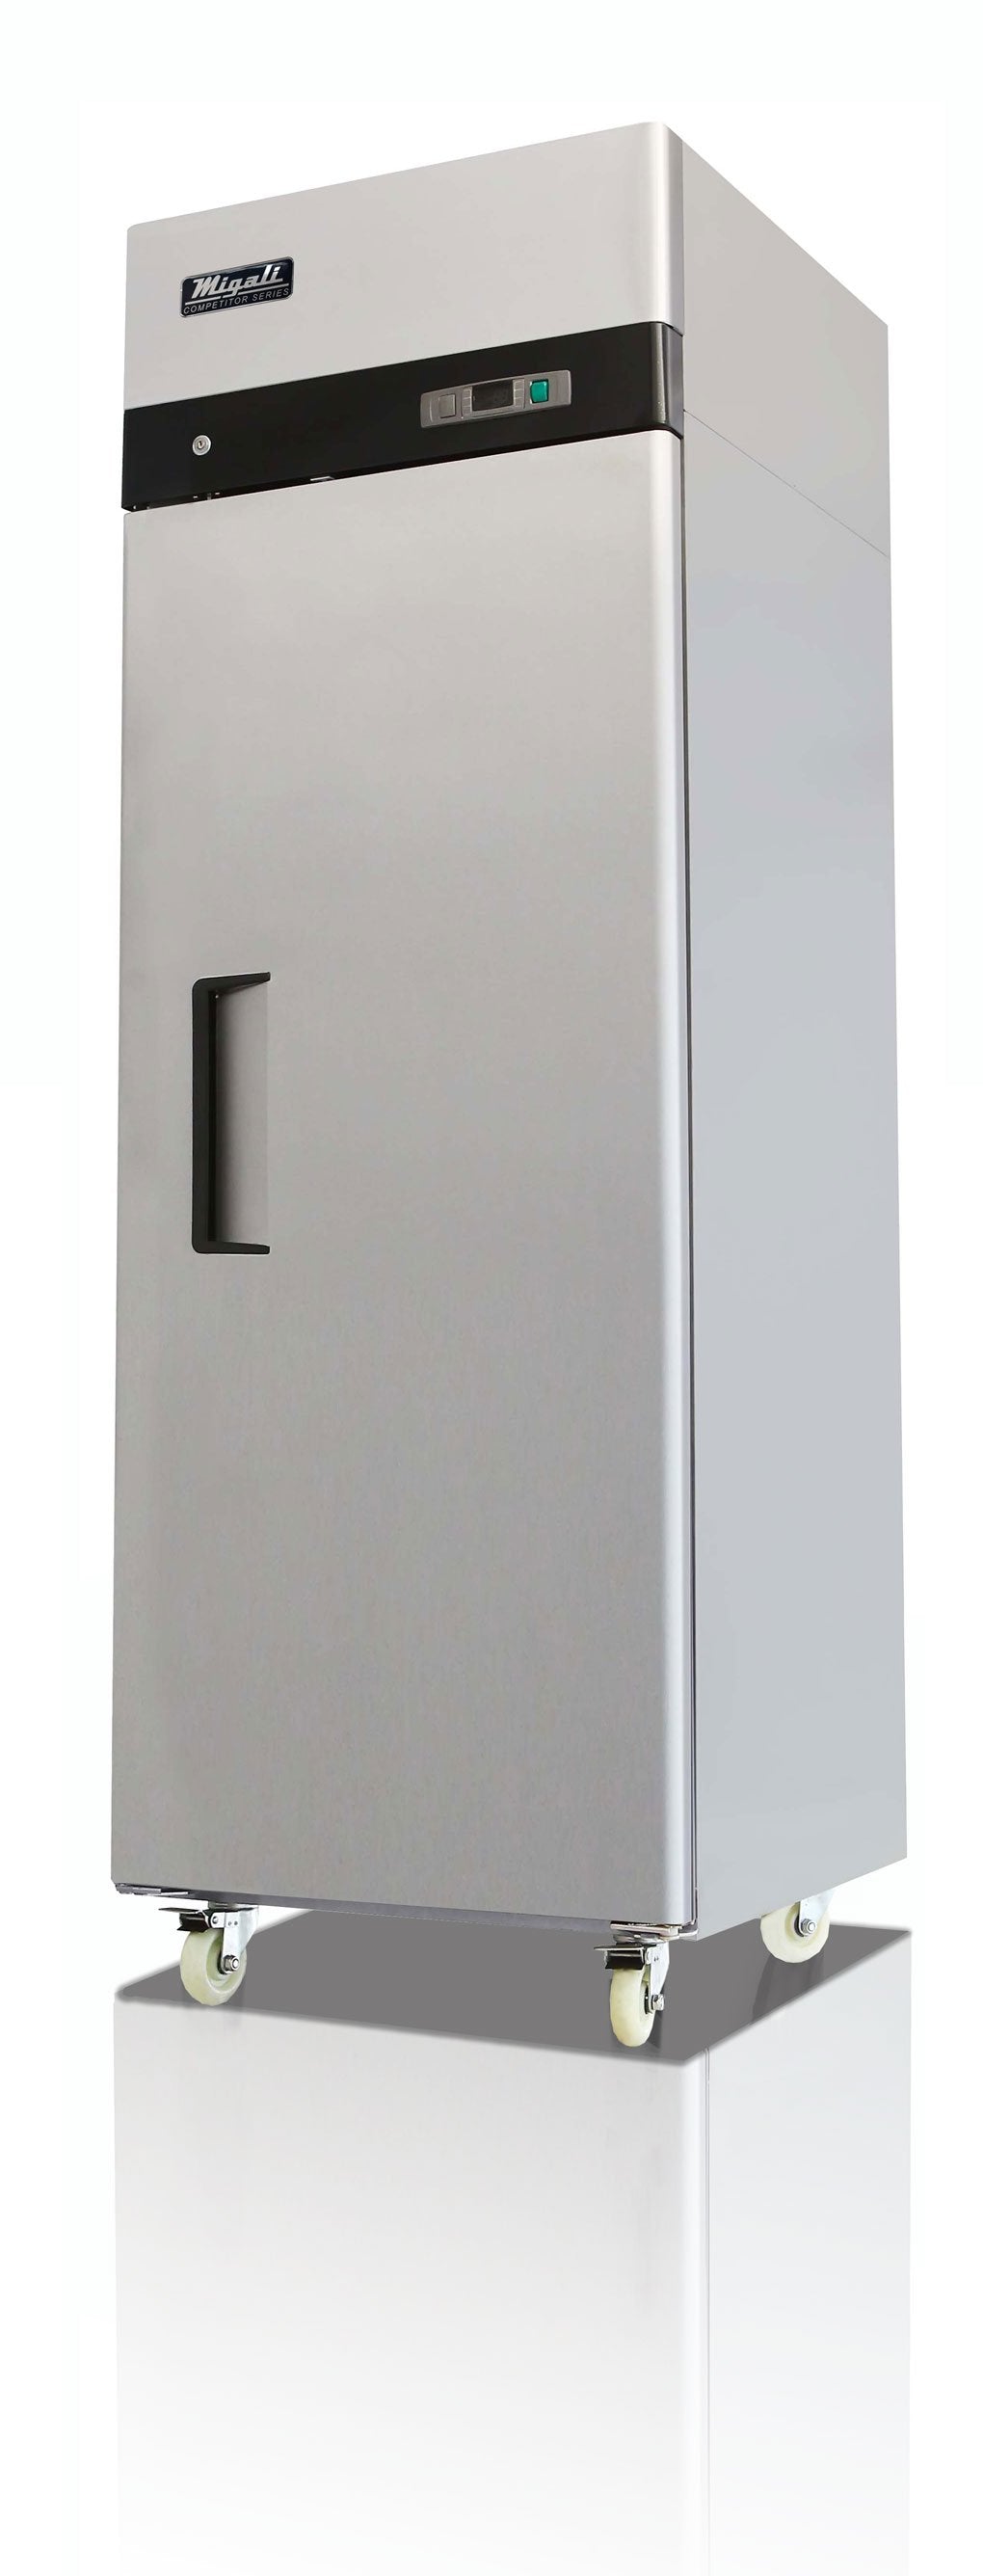 Migali C-1F-HC 1 Solid Door Freezer Top Mount